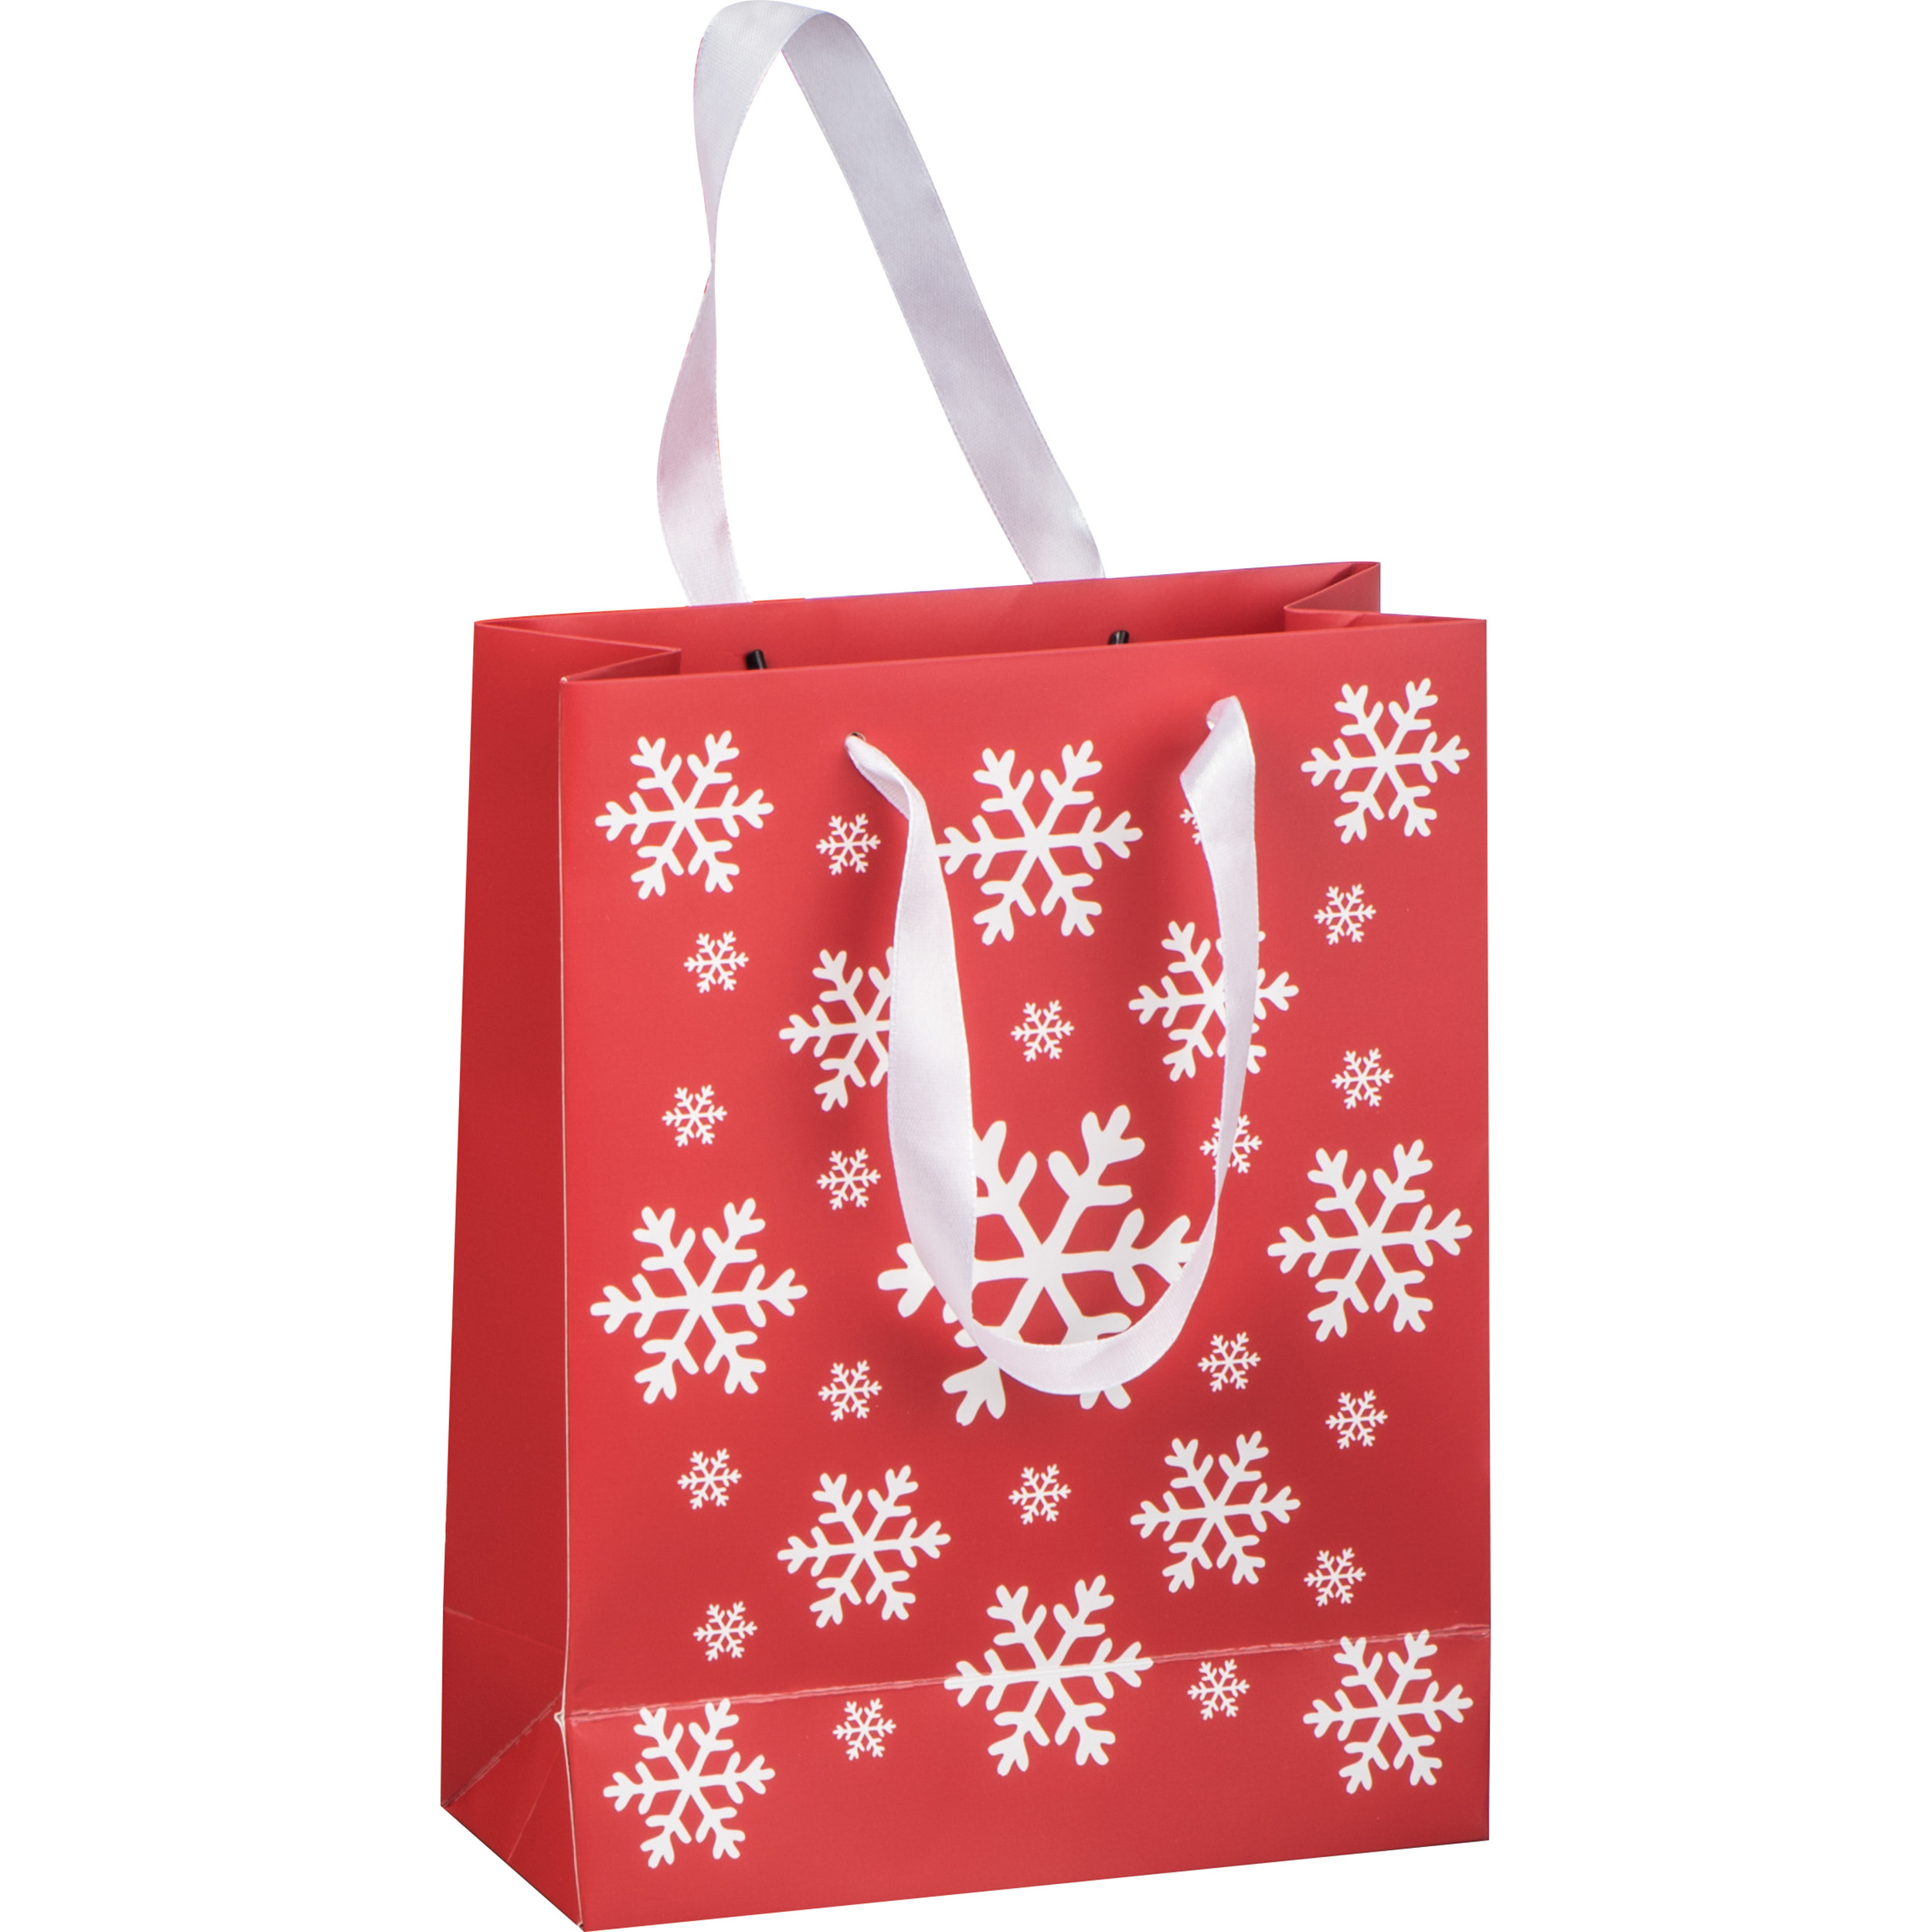 Snowflake Christmas Gift Bag - Abinger Hammer - Charmouth